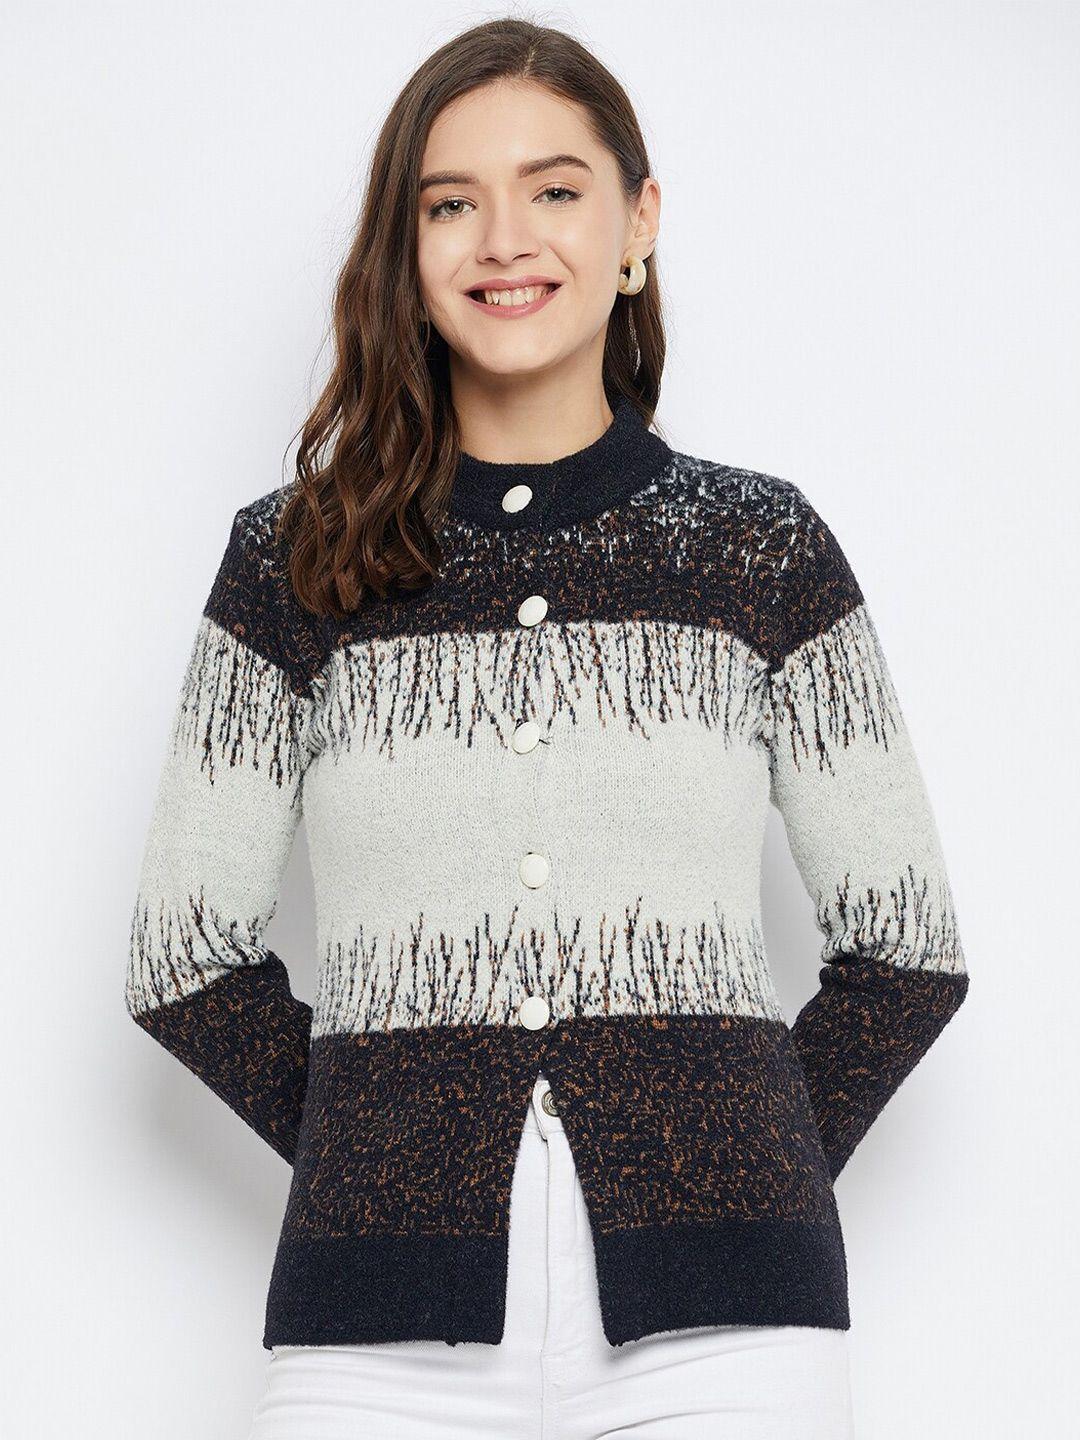 zigo-quirky-printed-woollen-cardigan-sweater